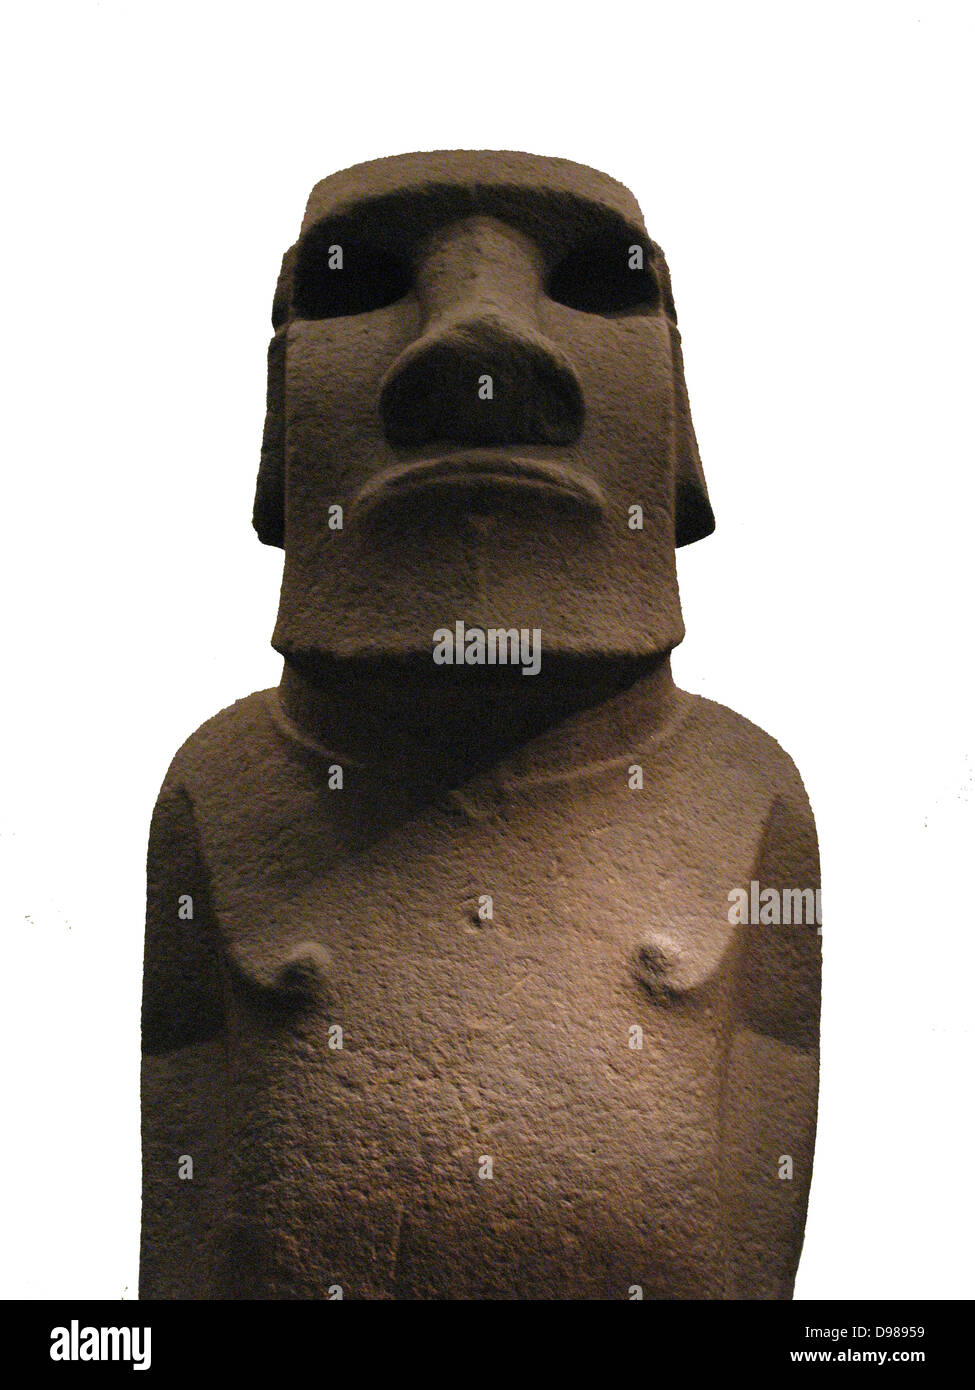 Statua di basalto noto come Hoa Hakananai (probabilmente 'rubate o nascosto amico'). Isola di Pasqua / Rap Nui, Cile (Sud Pacifico), circa 1400. Questa statua, che rappresenta una figura ancestrale, era probabilmente viene visualizzato per la prima volta all'aria aperta. Successivamente è stato spostato in una casa di pietra in Orongo, il centro di un culto birdman. Foto Stock